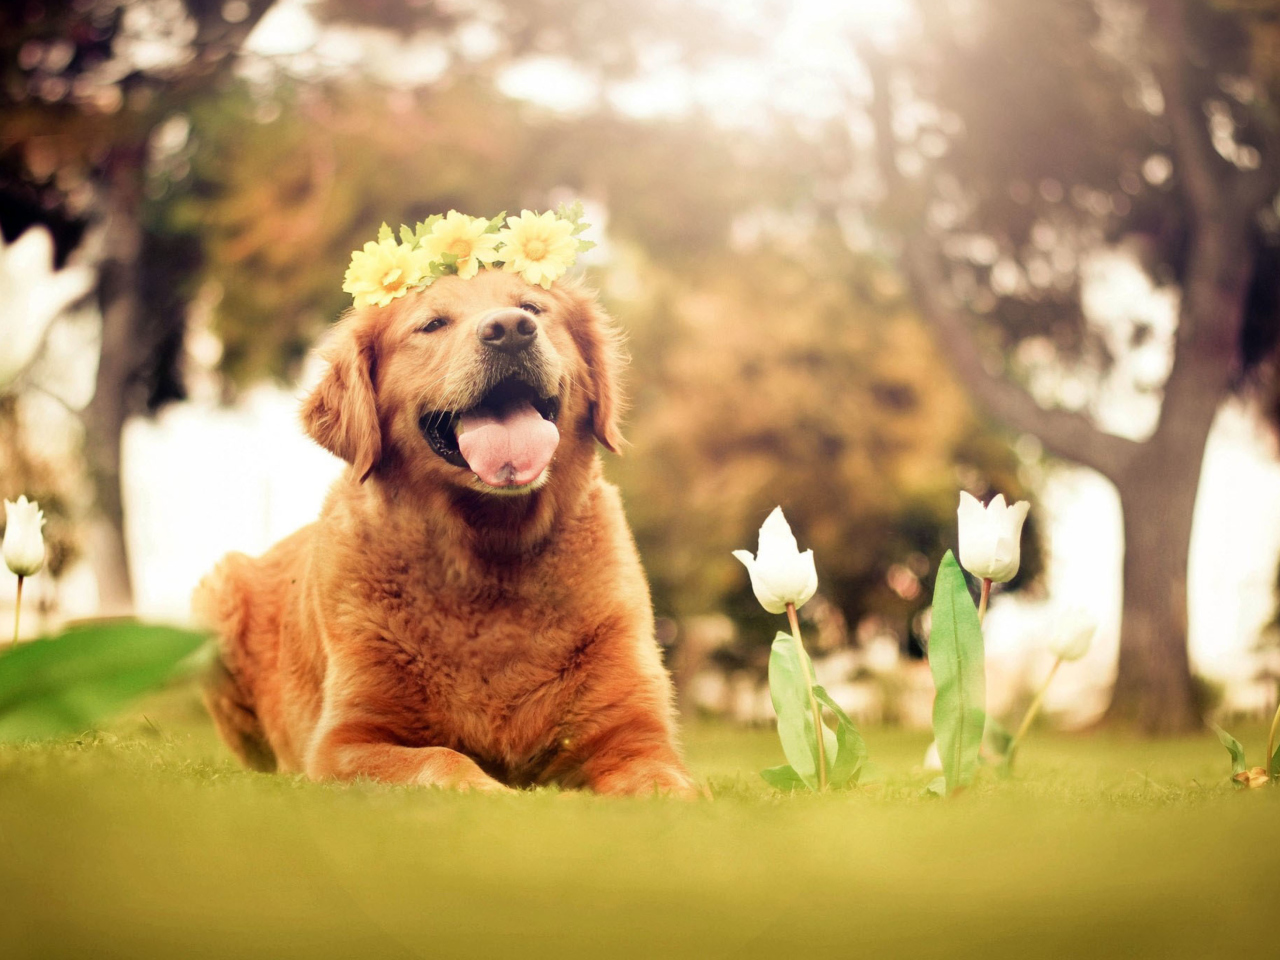 Обои Ginger Dog With Flower Wreath 1280x960